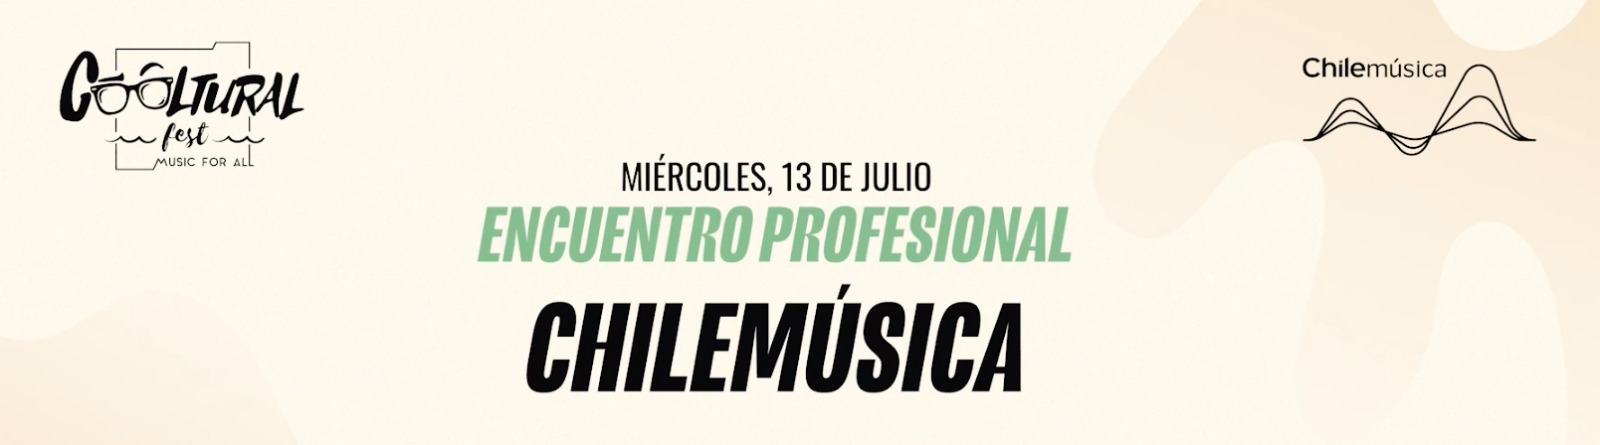 El II Encuentro Profesional de Chilemúsica y Cooltural Fest debate sobre herramientas para fomentar la internacionalización en la música